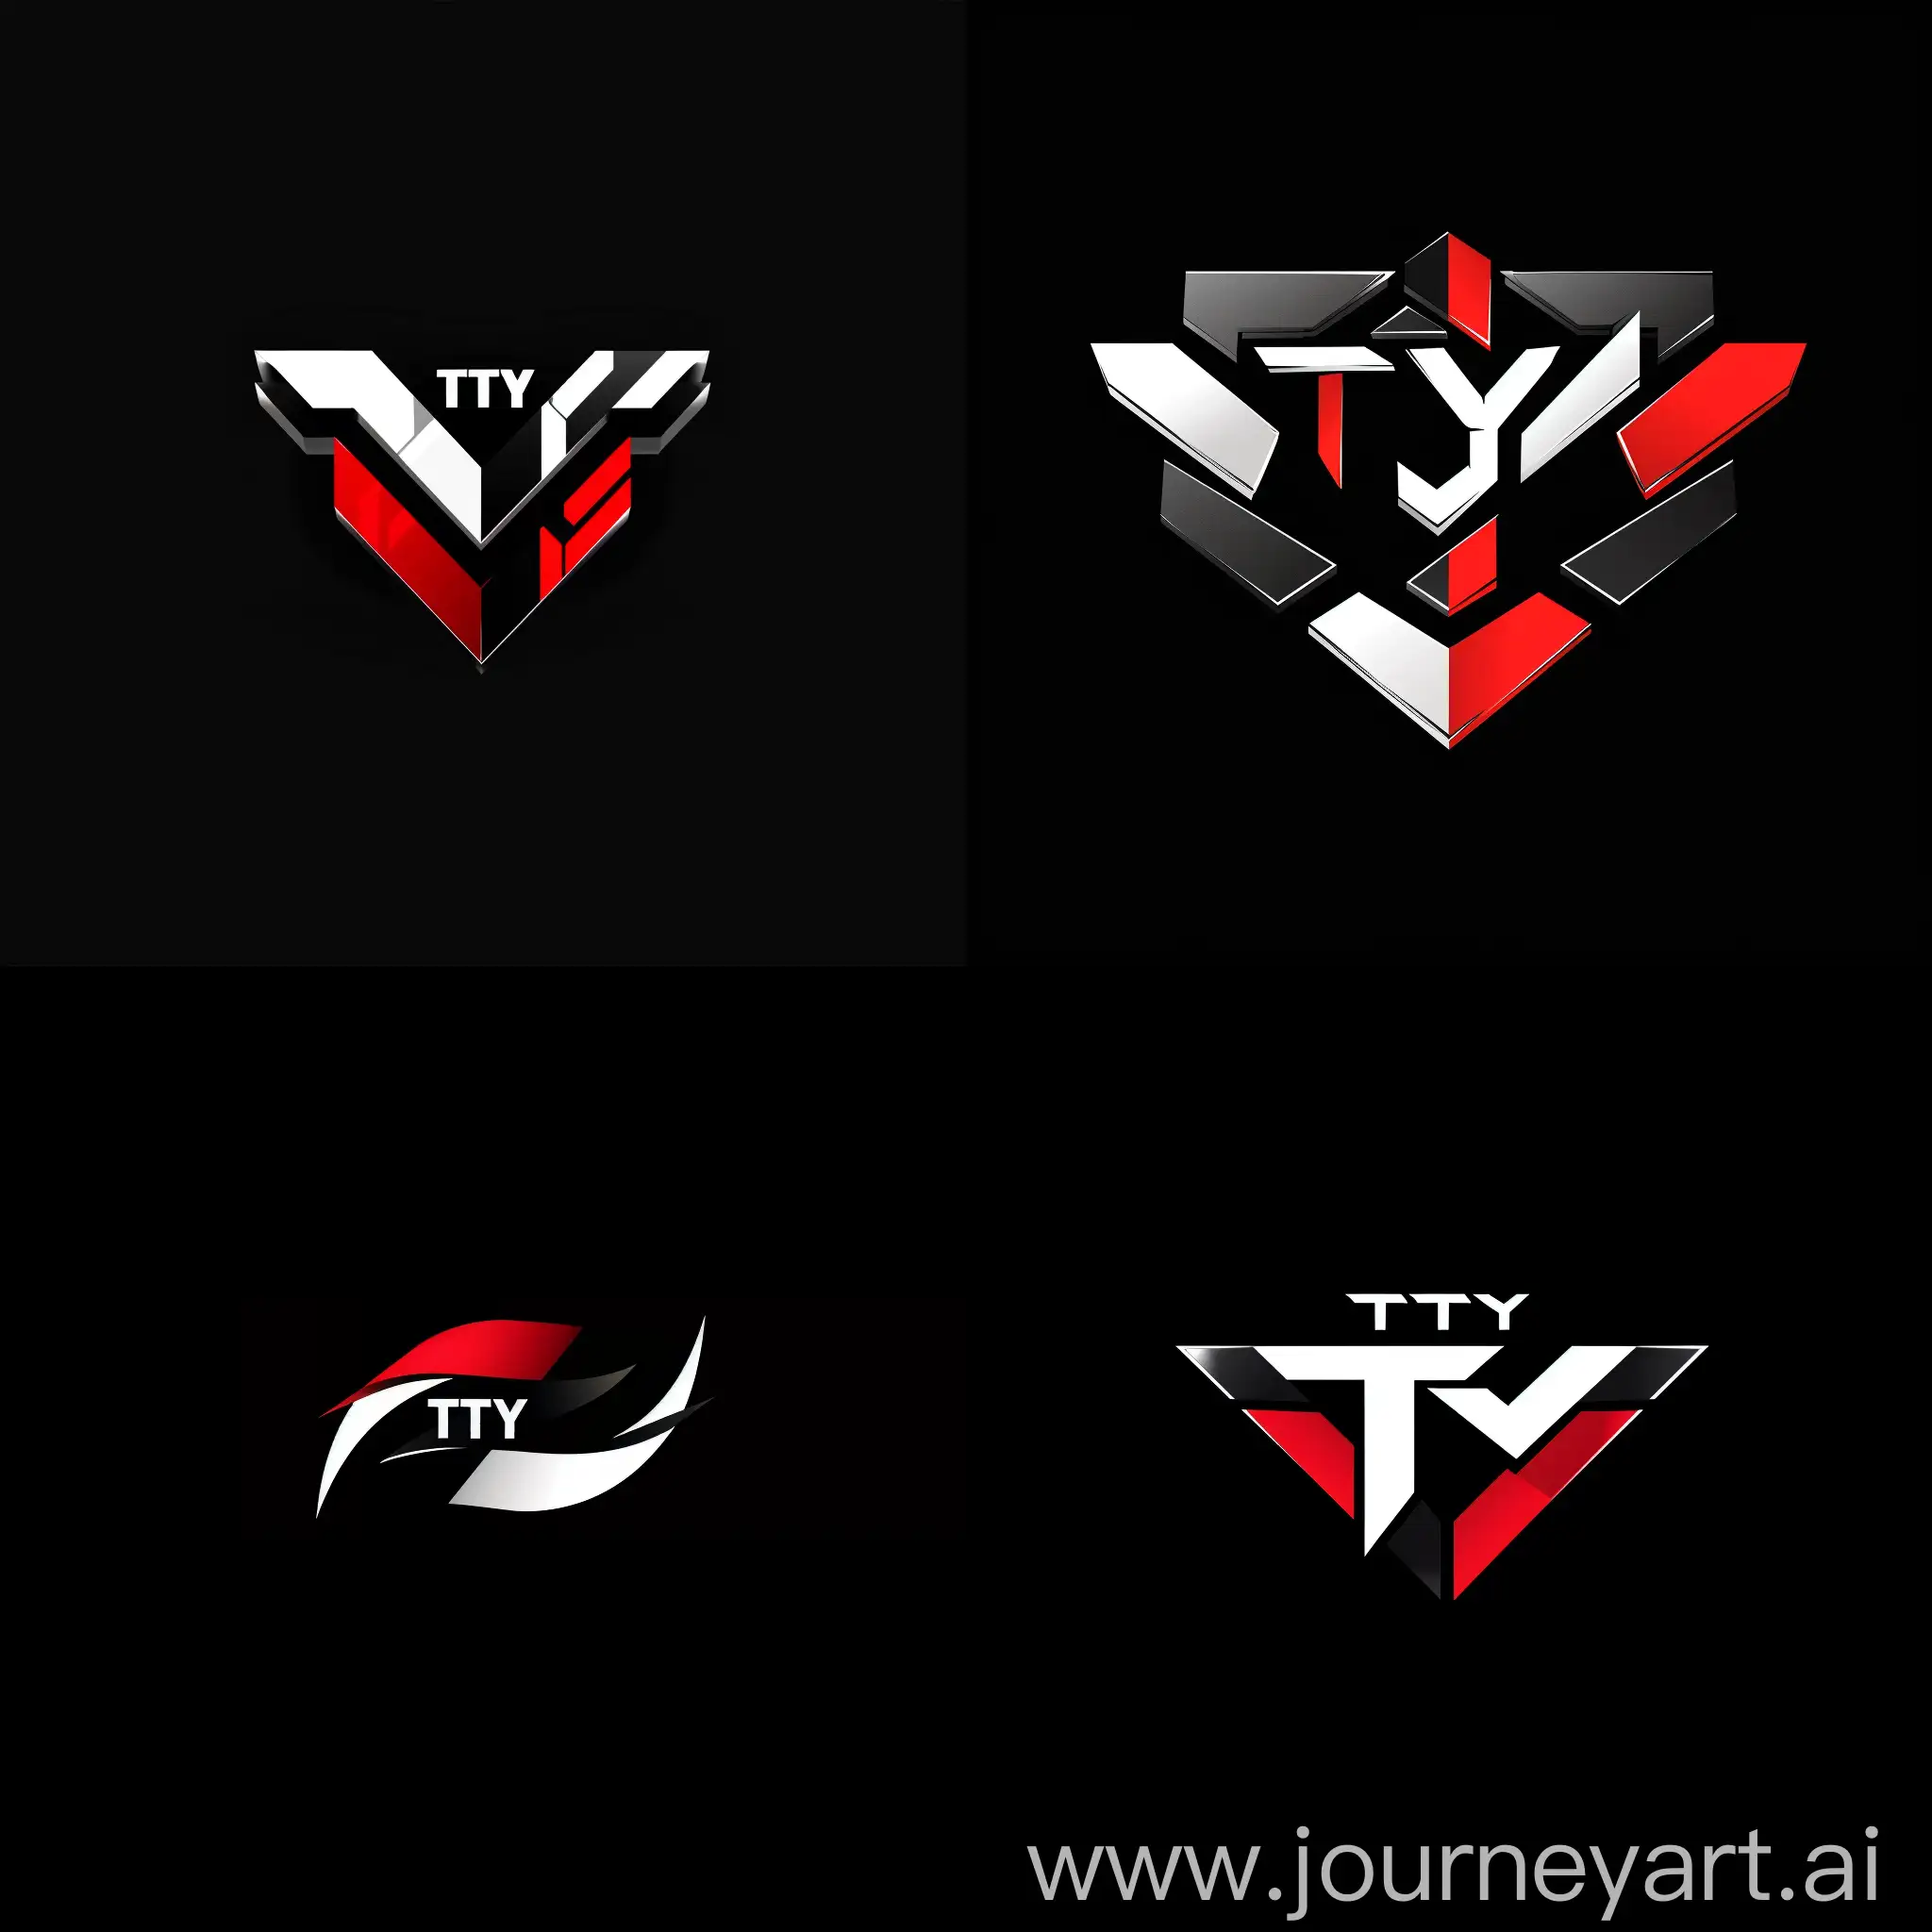 背景为纯黑 ,中间logo为tty,logo颜色以白红黑为主